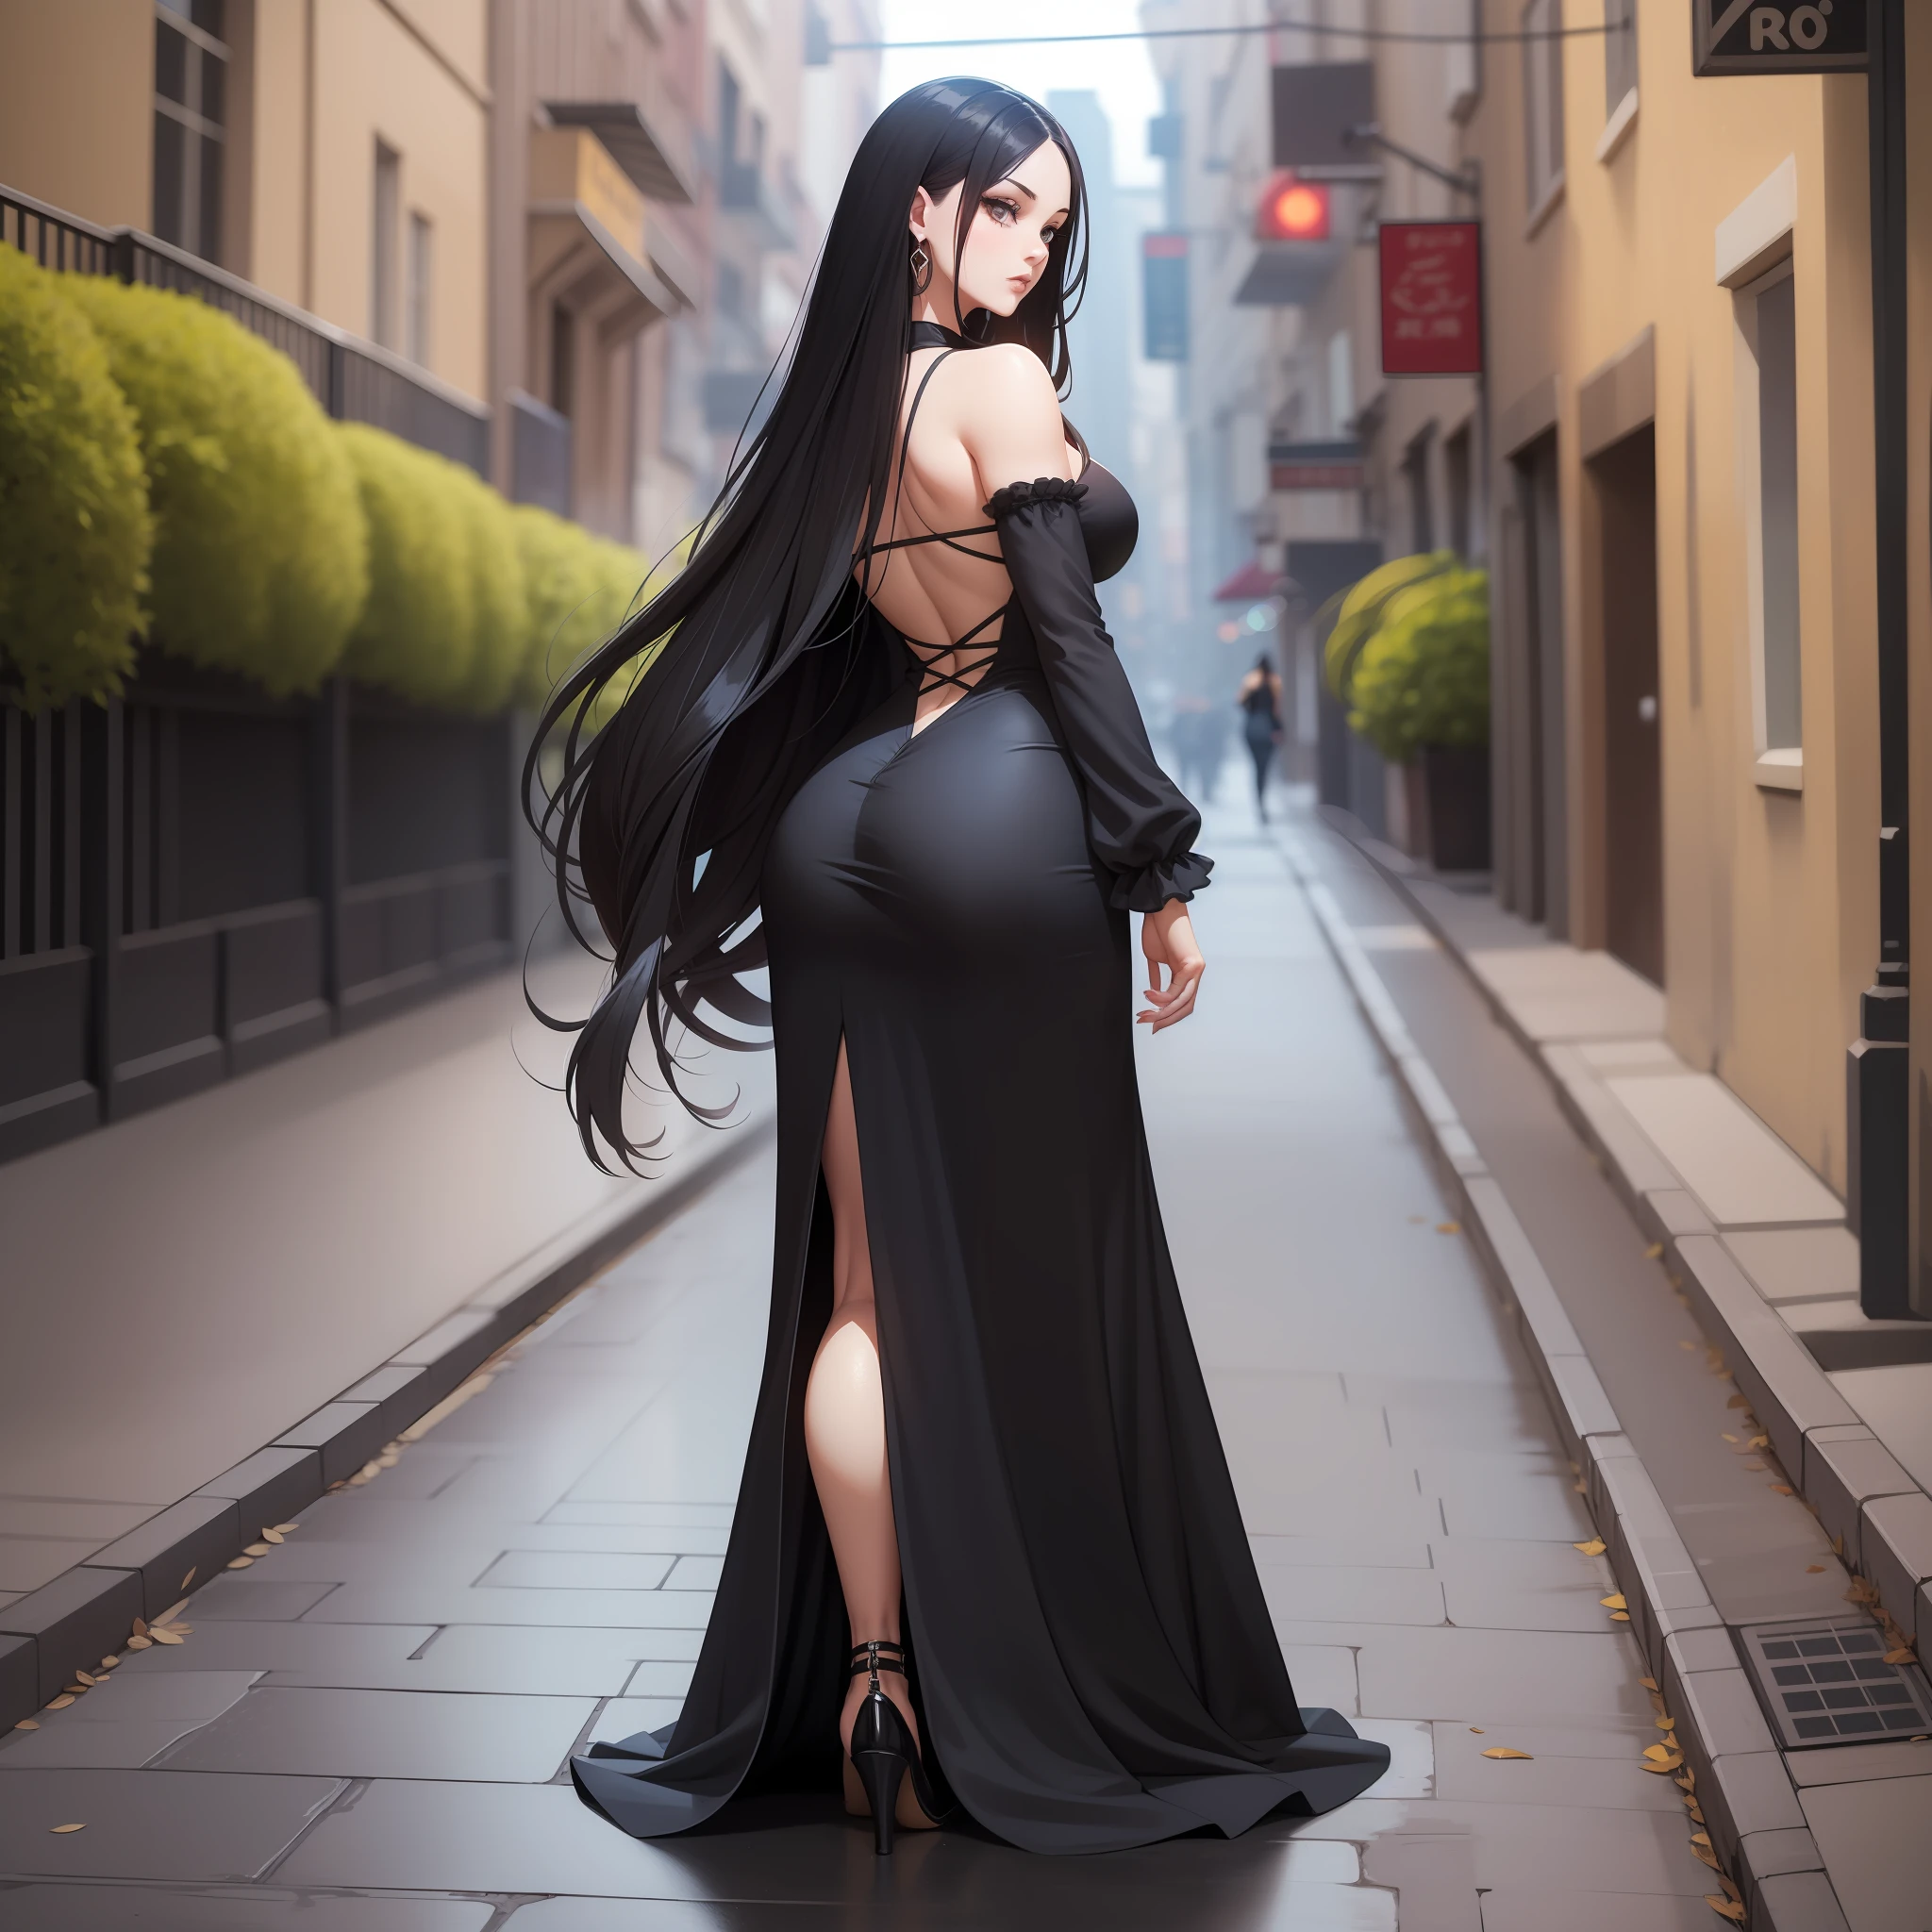 schwarze lange Haare, Patricia-Doppelgängerin, langes schwarzes Kleid, attraktiv, verlockend, Figur, feminin, gotisch, 1980’s Tall slender Figur, zurückblicken